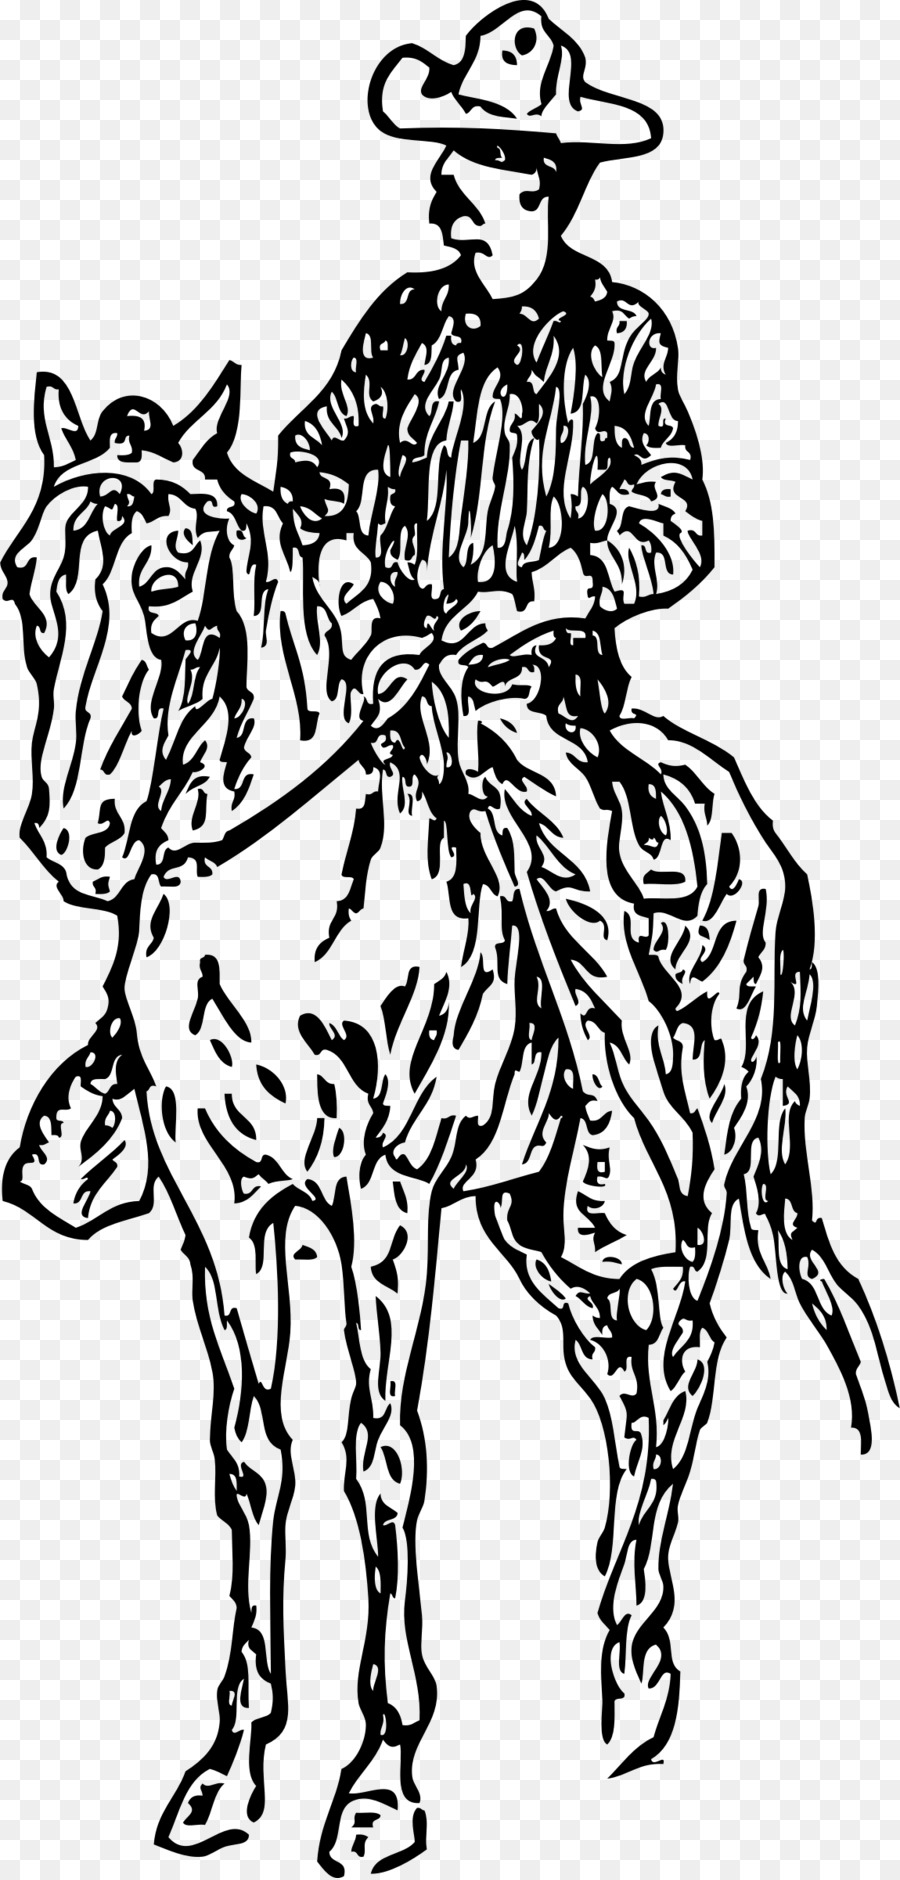 Pferd Pferdesport Zeichnung Cowboy clipart - Cowboy